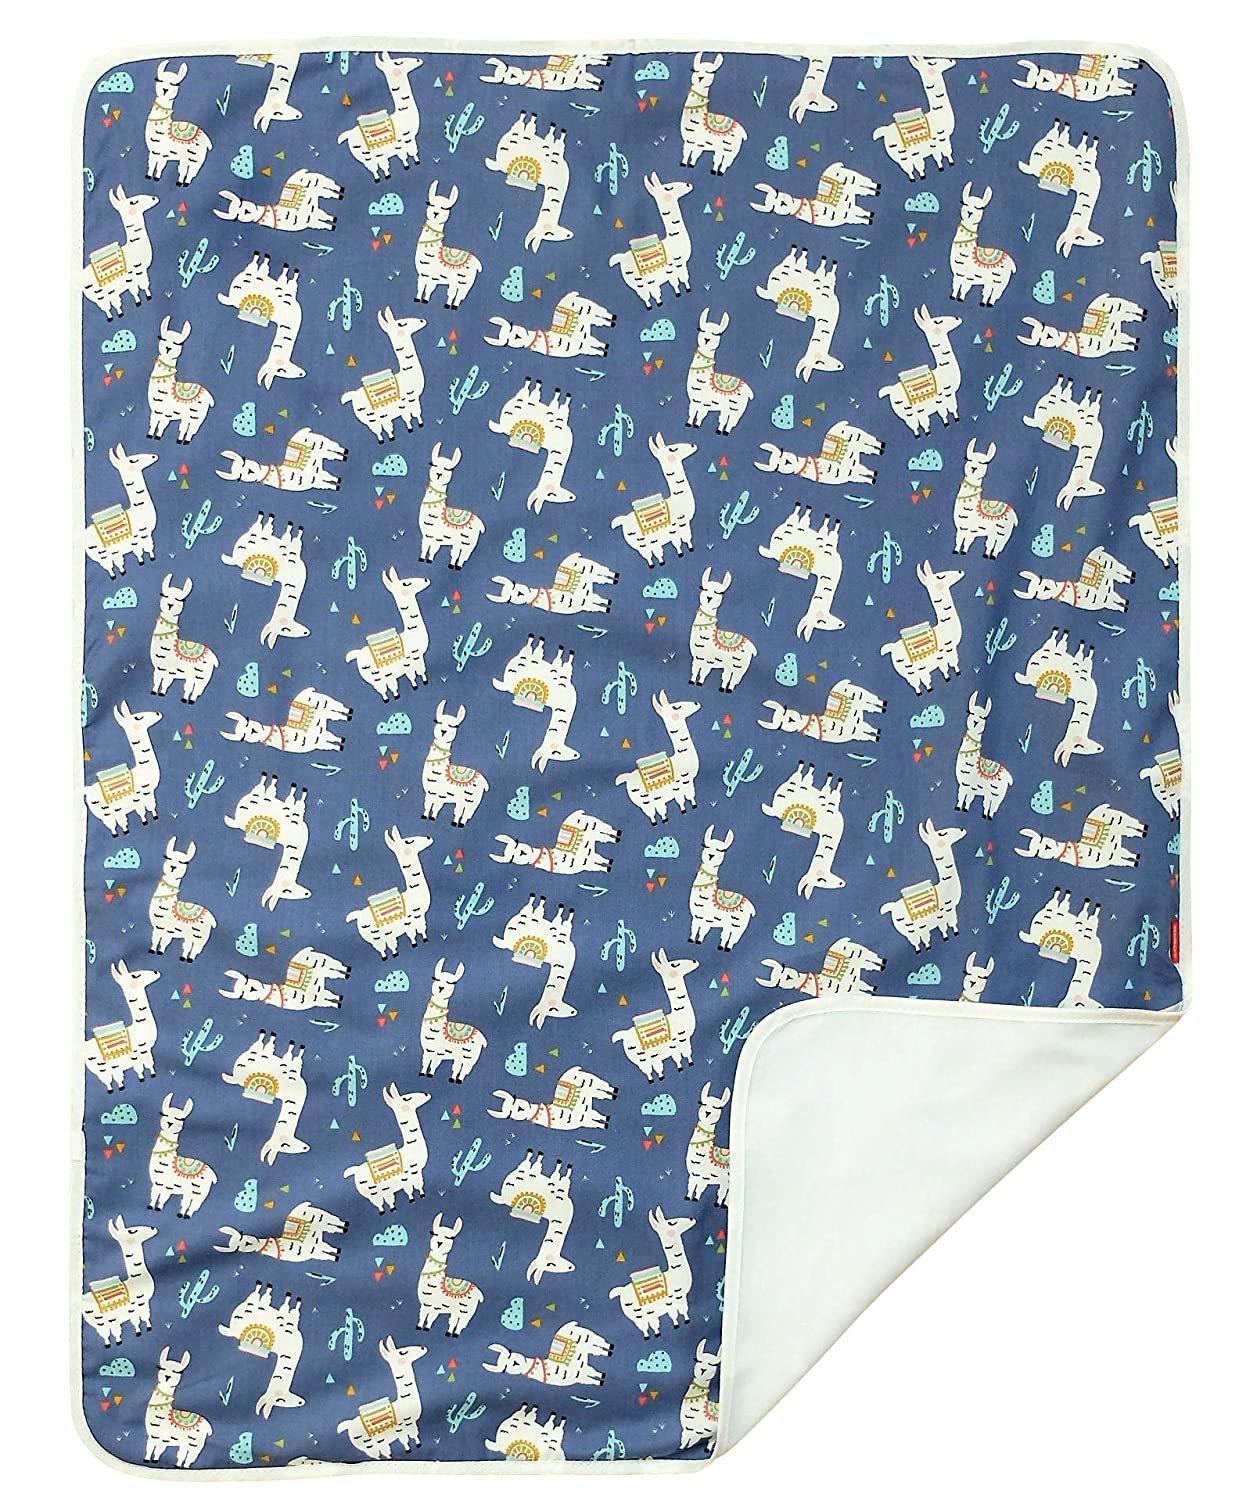 Ideenreich 2571 IDEENREICH 2571 Baby Blanket Lama Blue 70 x 90 cm Blue